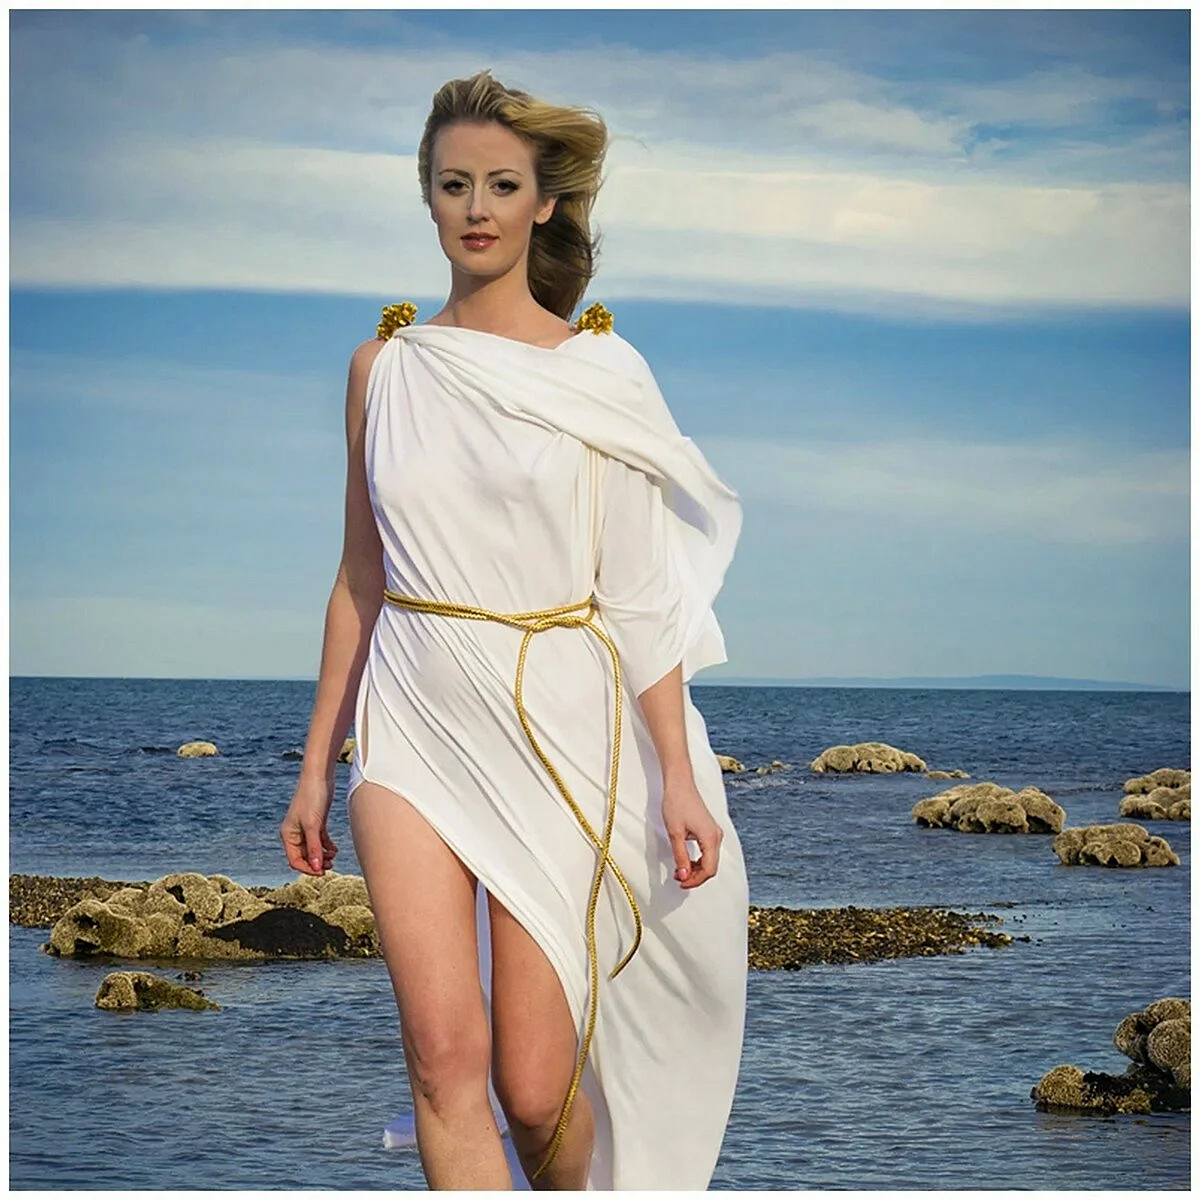 Греческая богиня Афродита